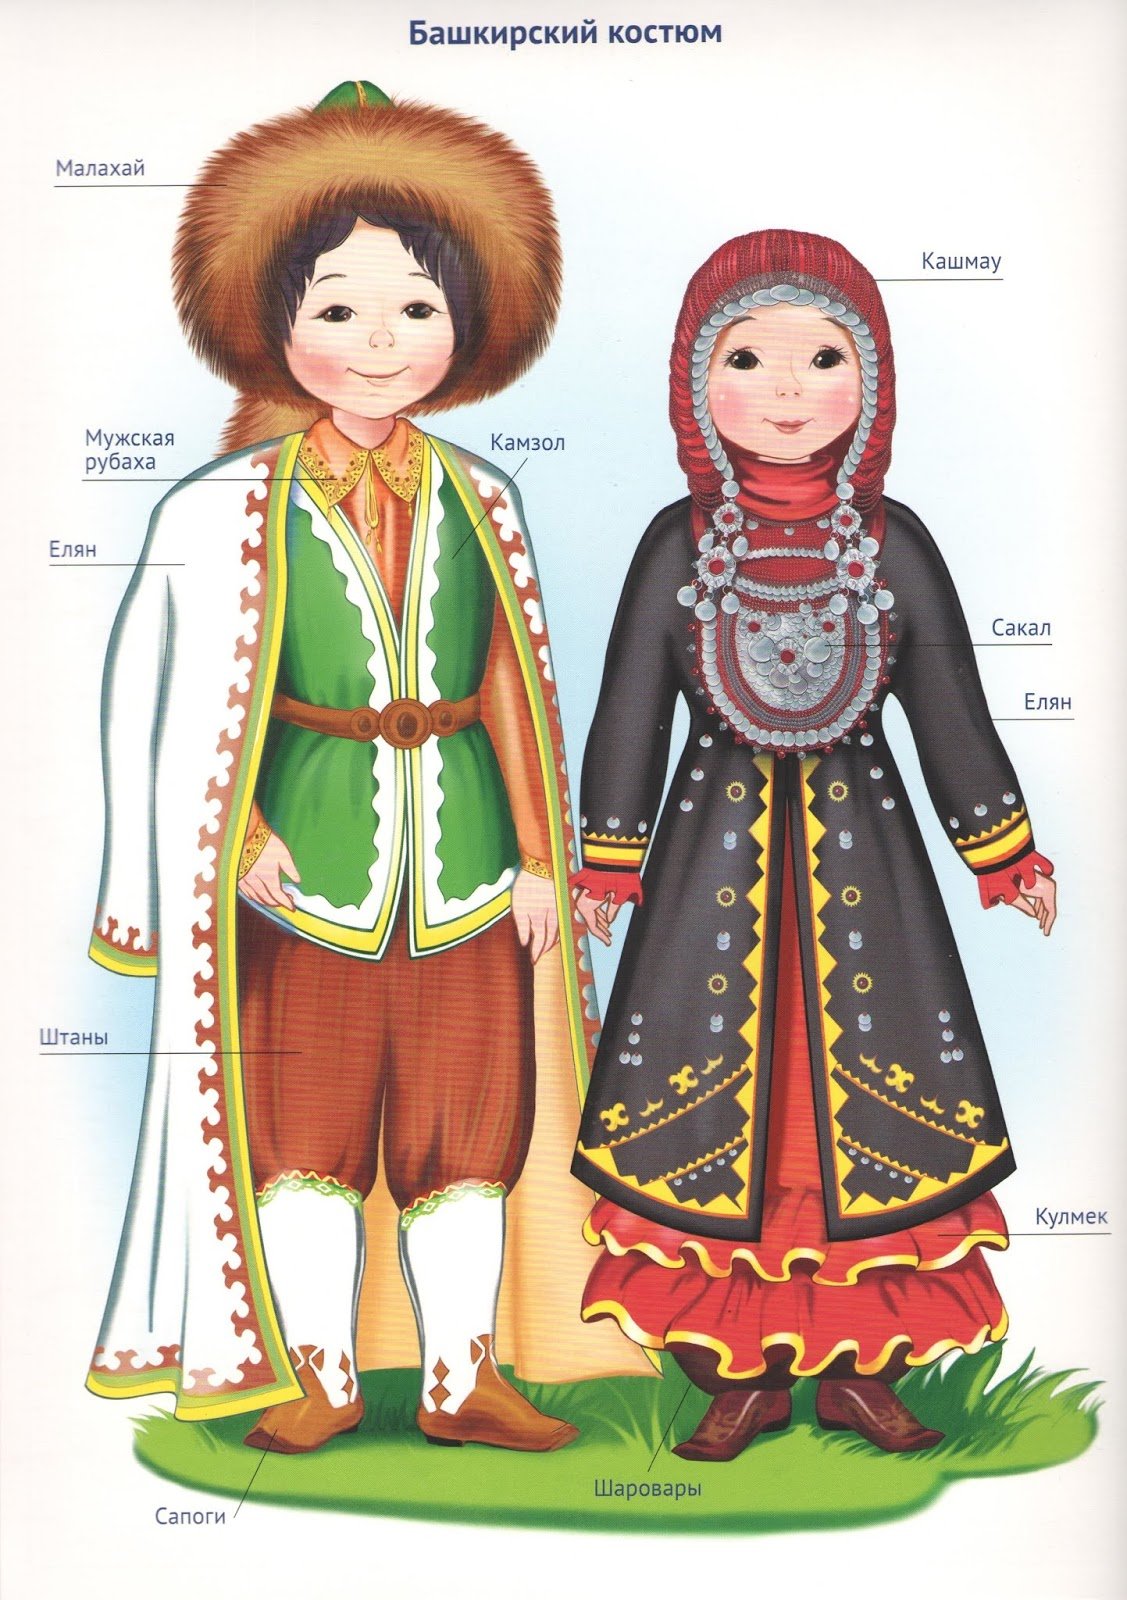 Национальные костюмы Башкиров народов России